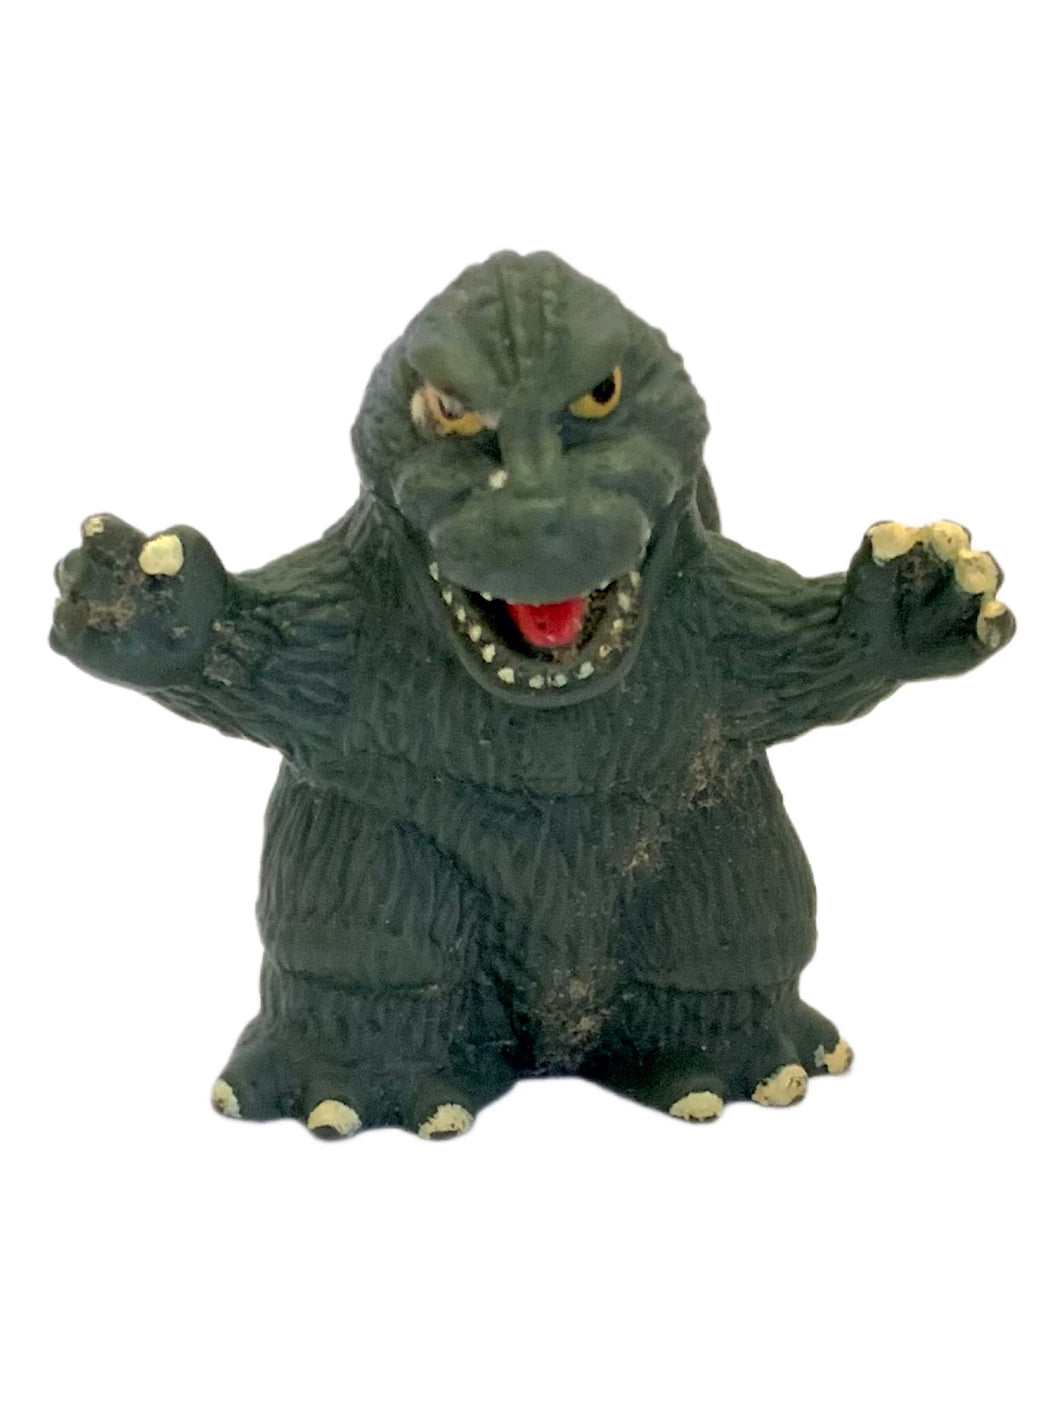 Gojira - Godzilla '62 - Godzilla All-Out Attack - Trading Figure